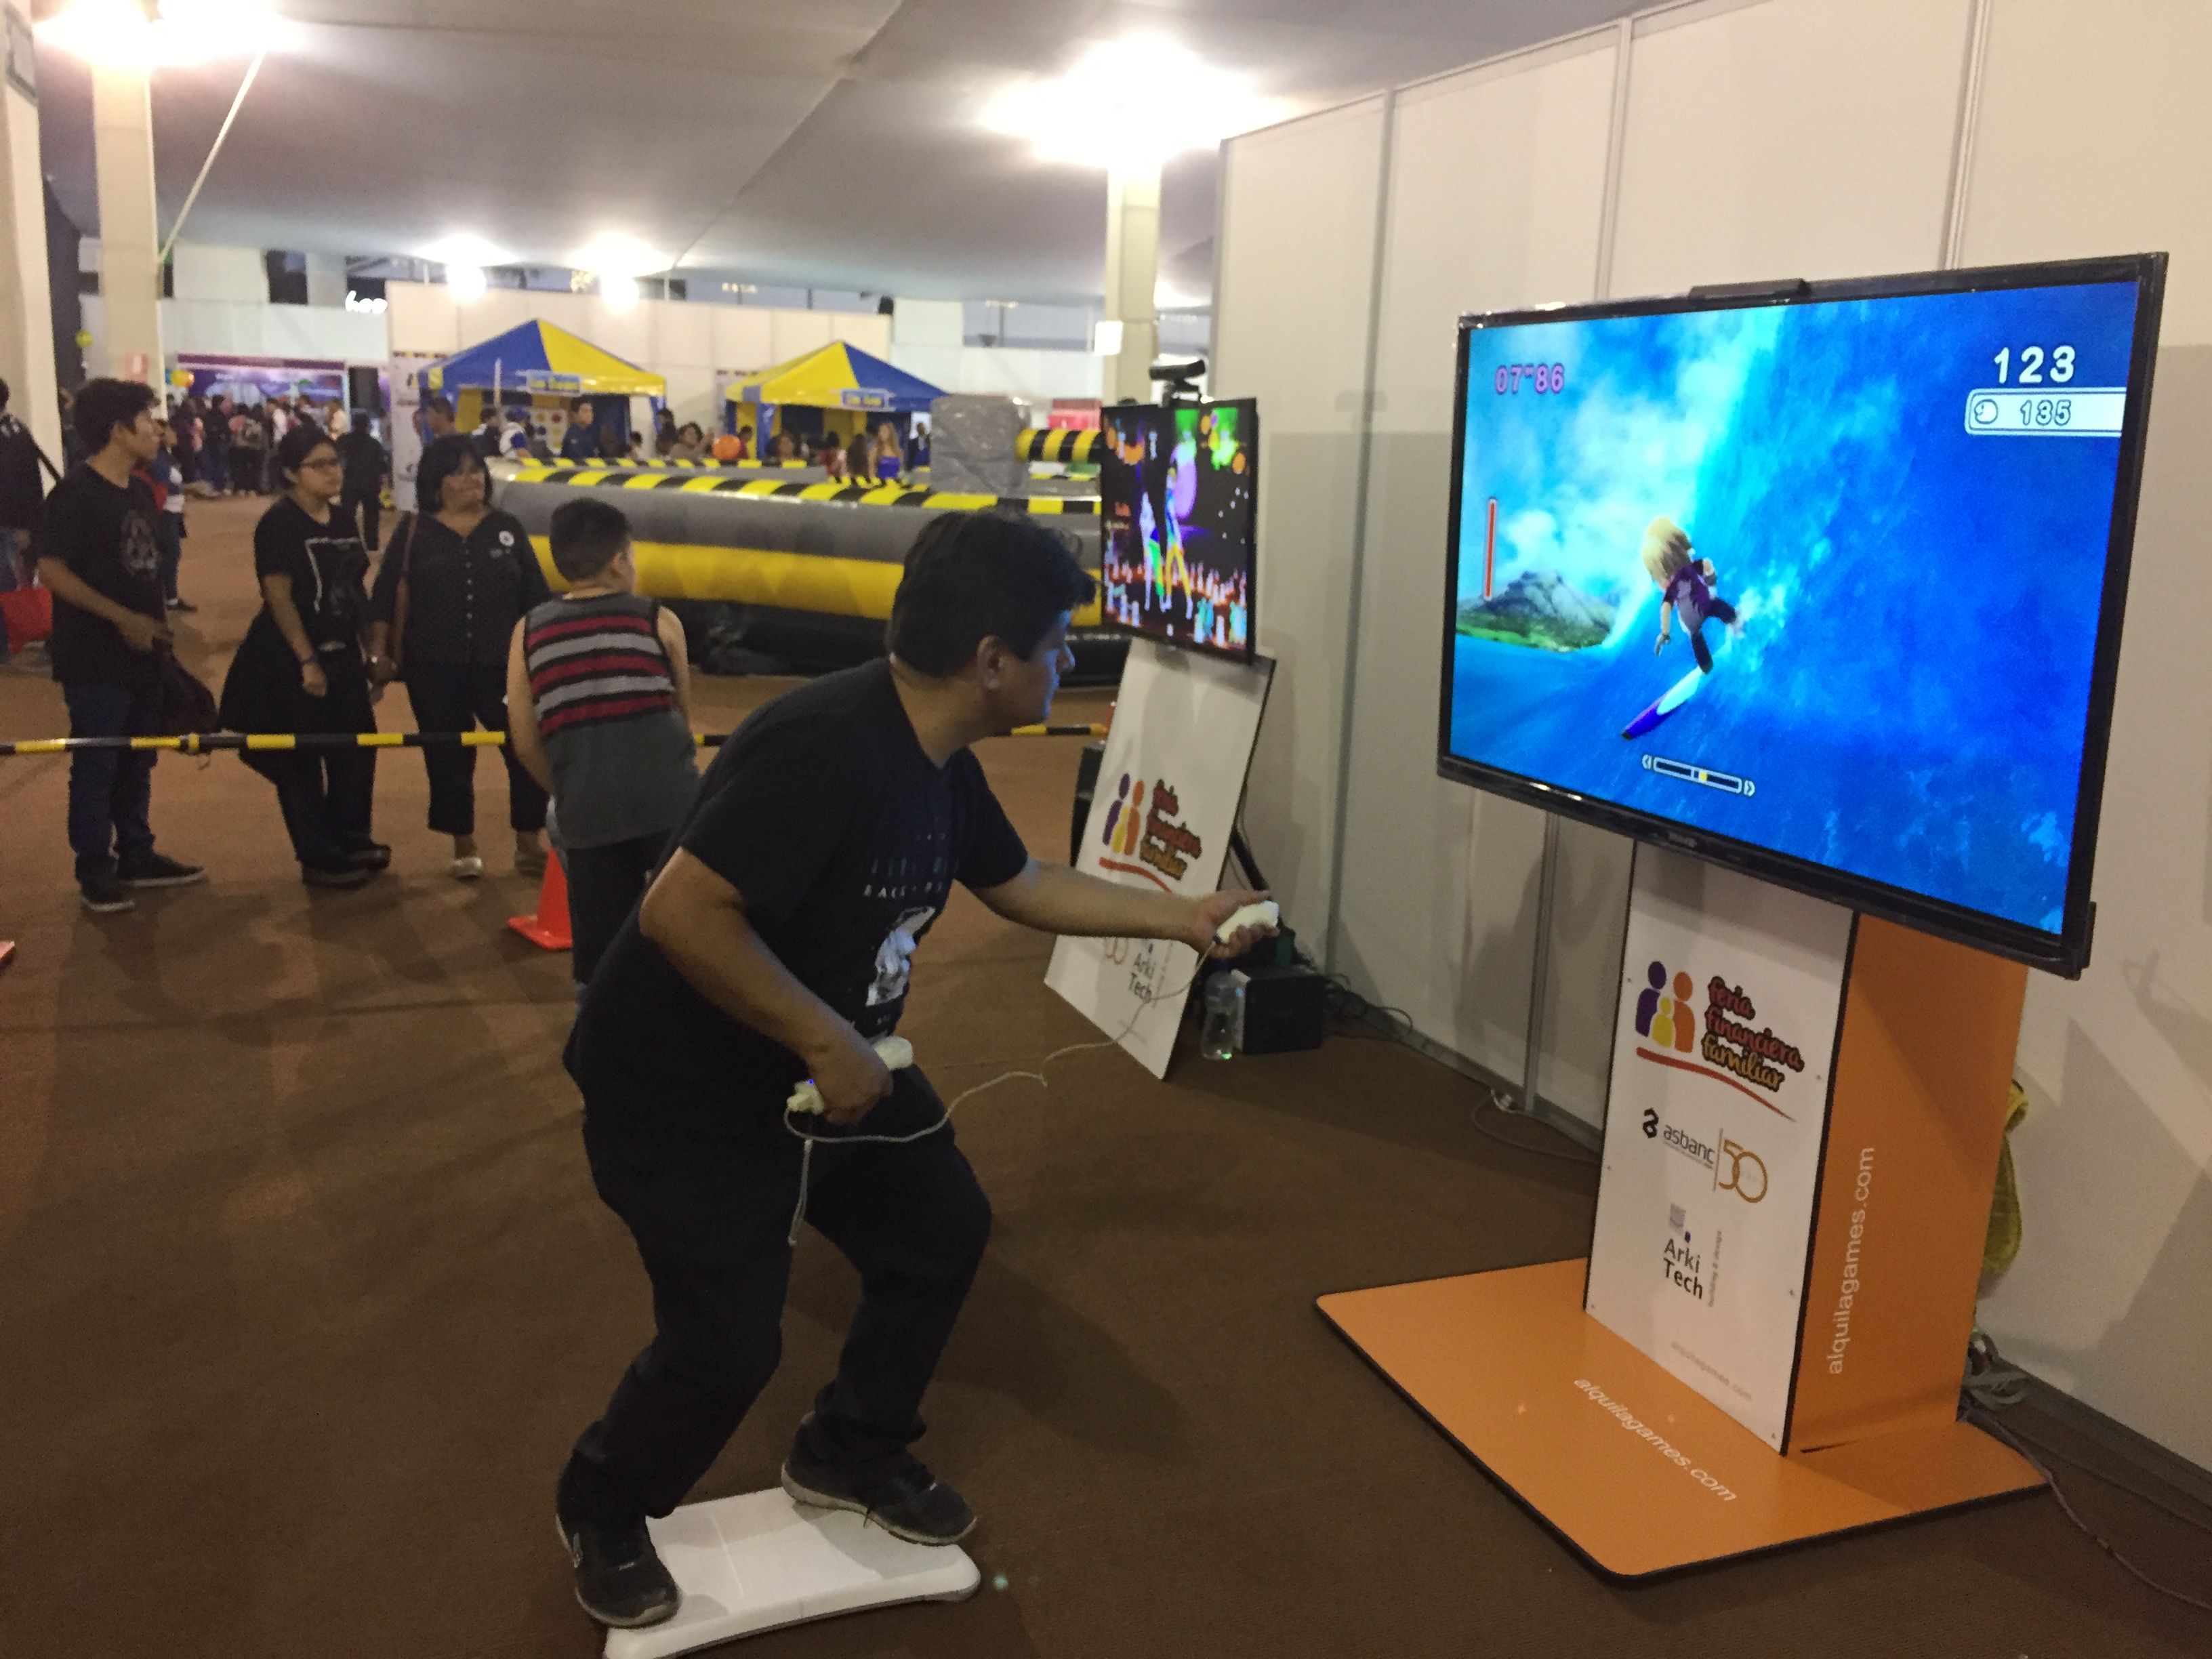 Juegos de realidad Virtual, Fifa, Just Dance 2018, Wii 